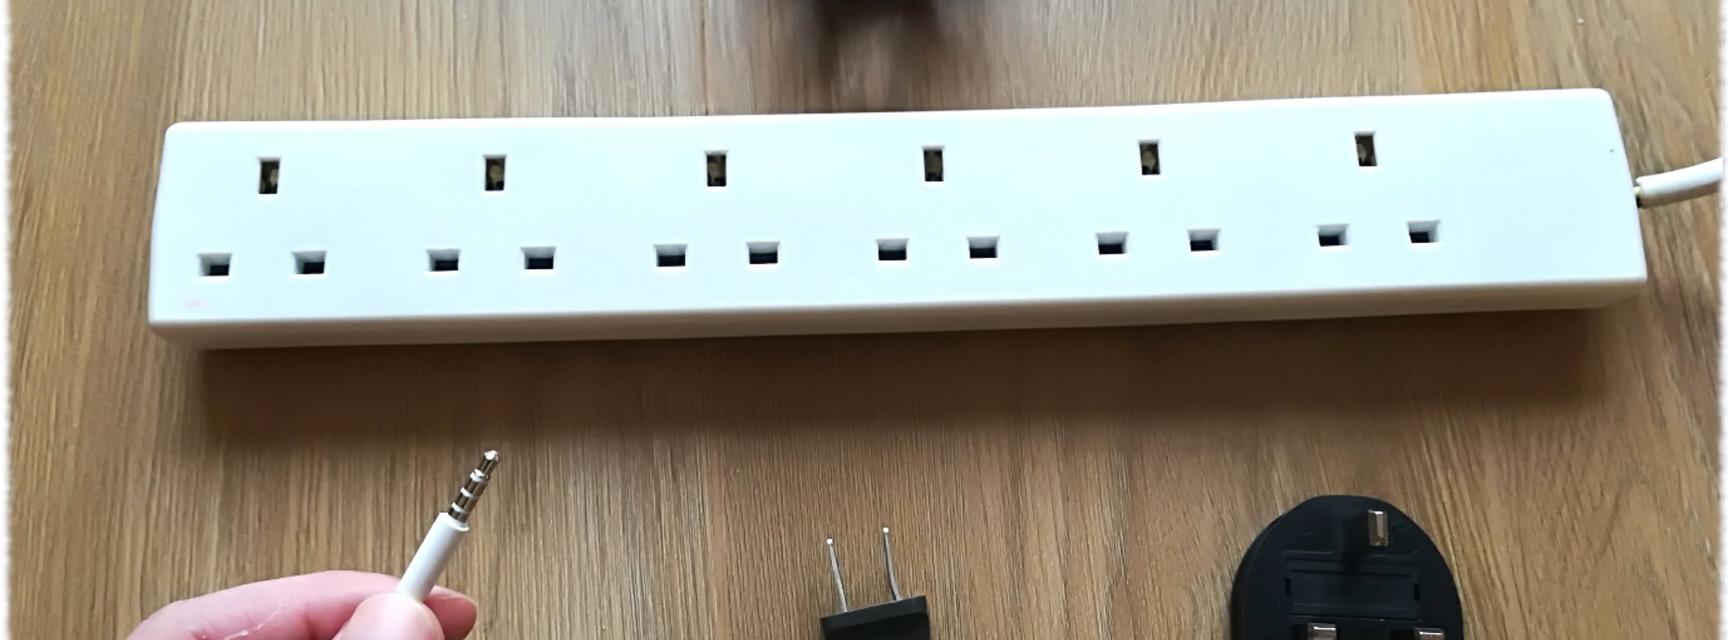 multi plug socket